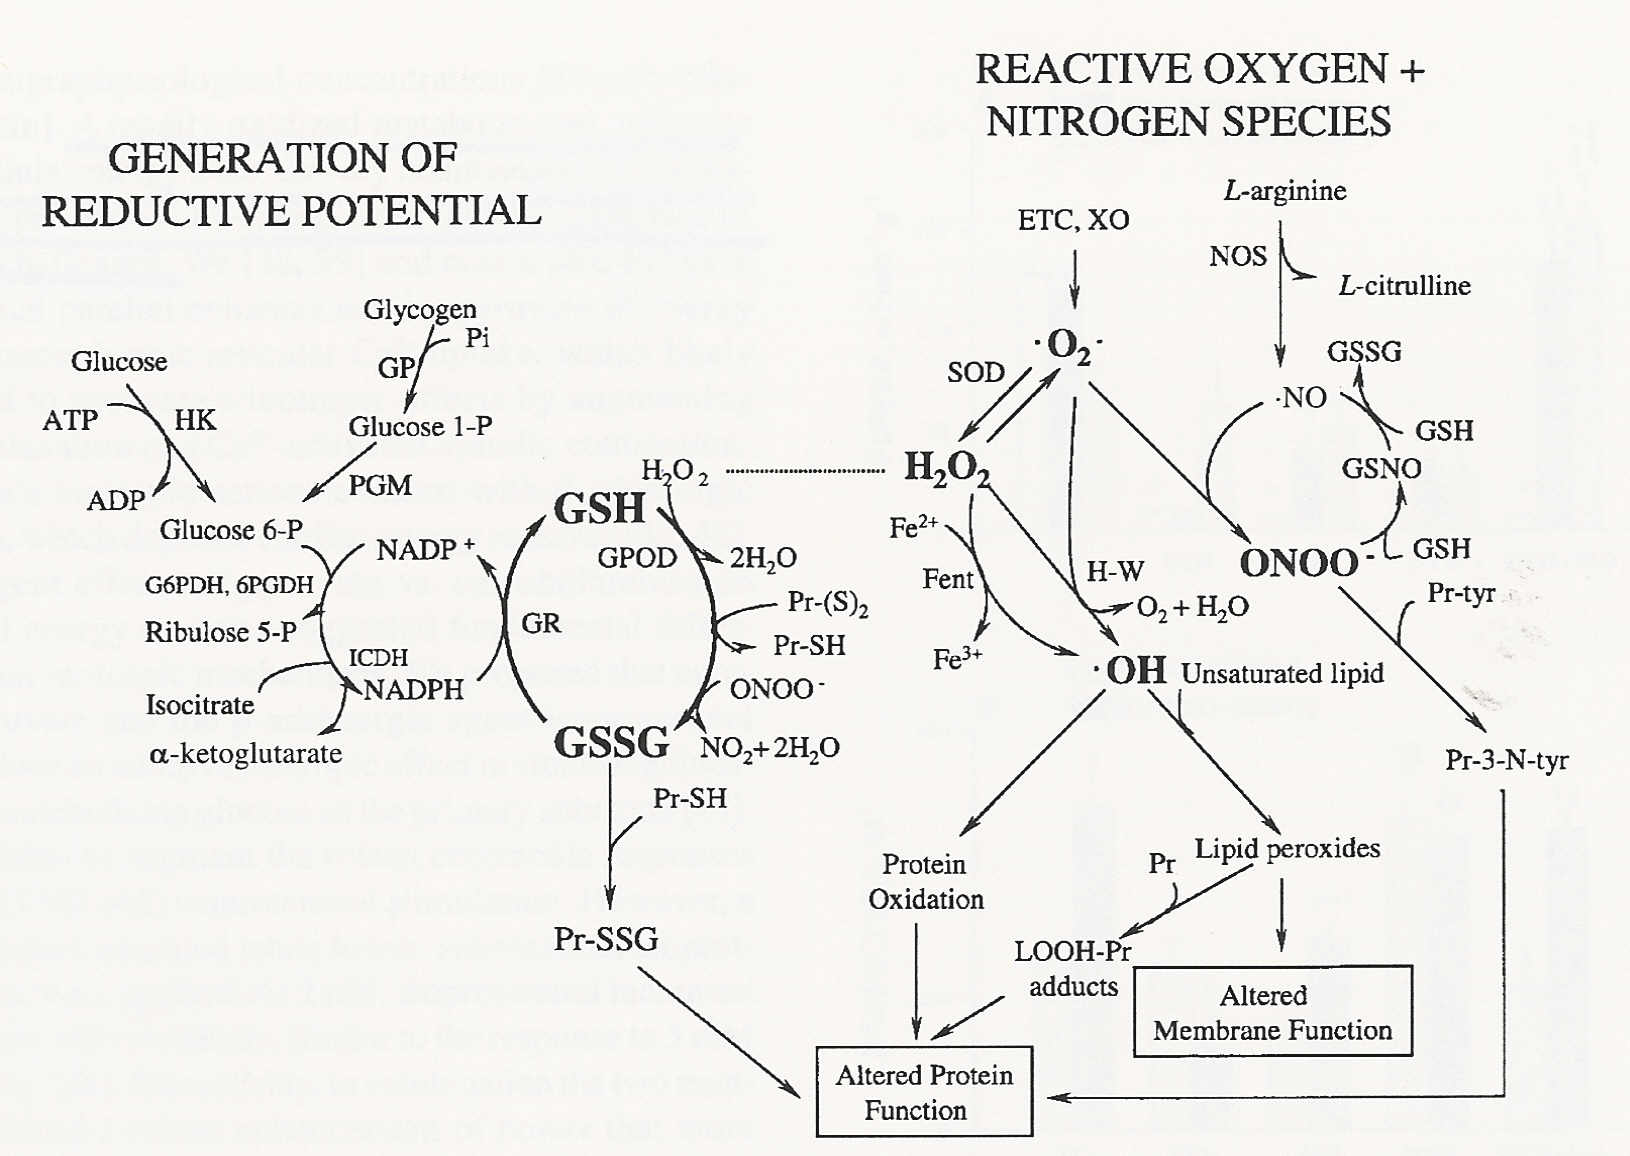 GSH/GSH Redox Pair Anti-Oxidant Defense